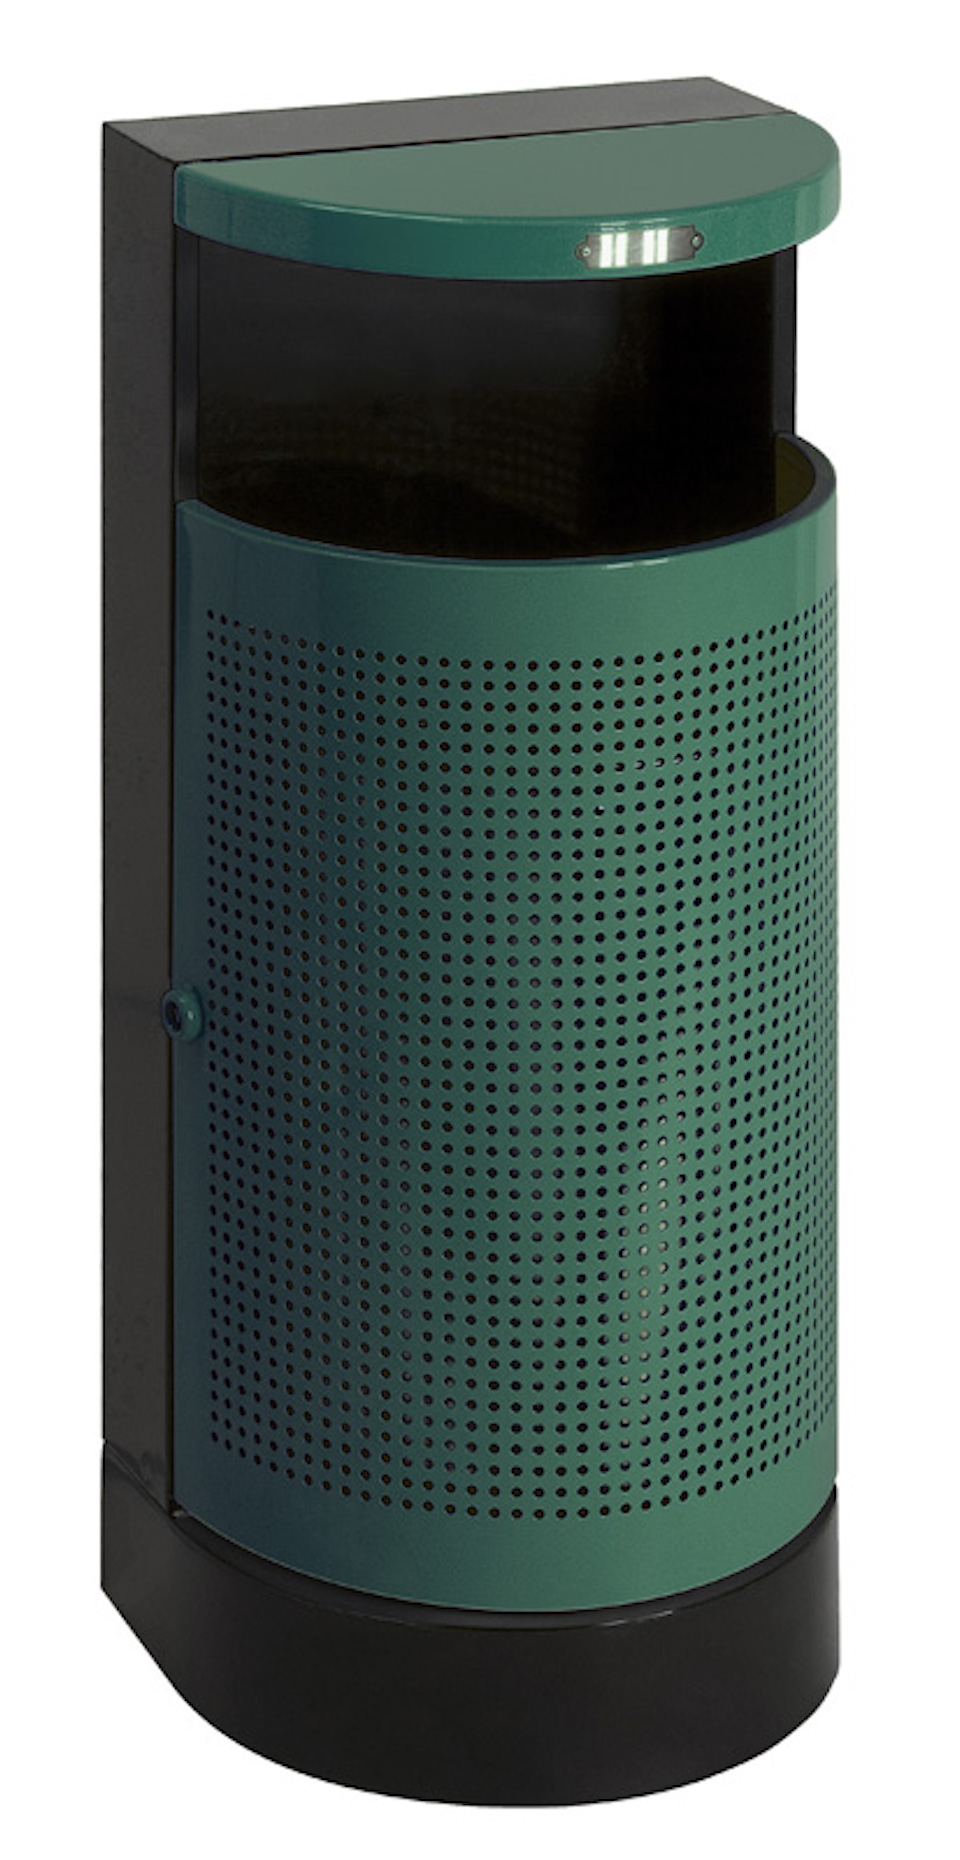 Halbrunder Abfallbehälter mit Bedachung für den Außenberreich | 35 Liter, HxBxT 90x40x32cm | Grün